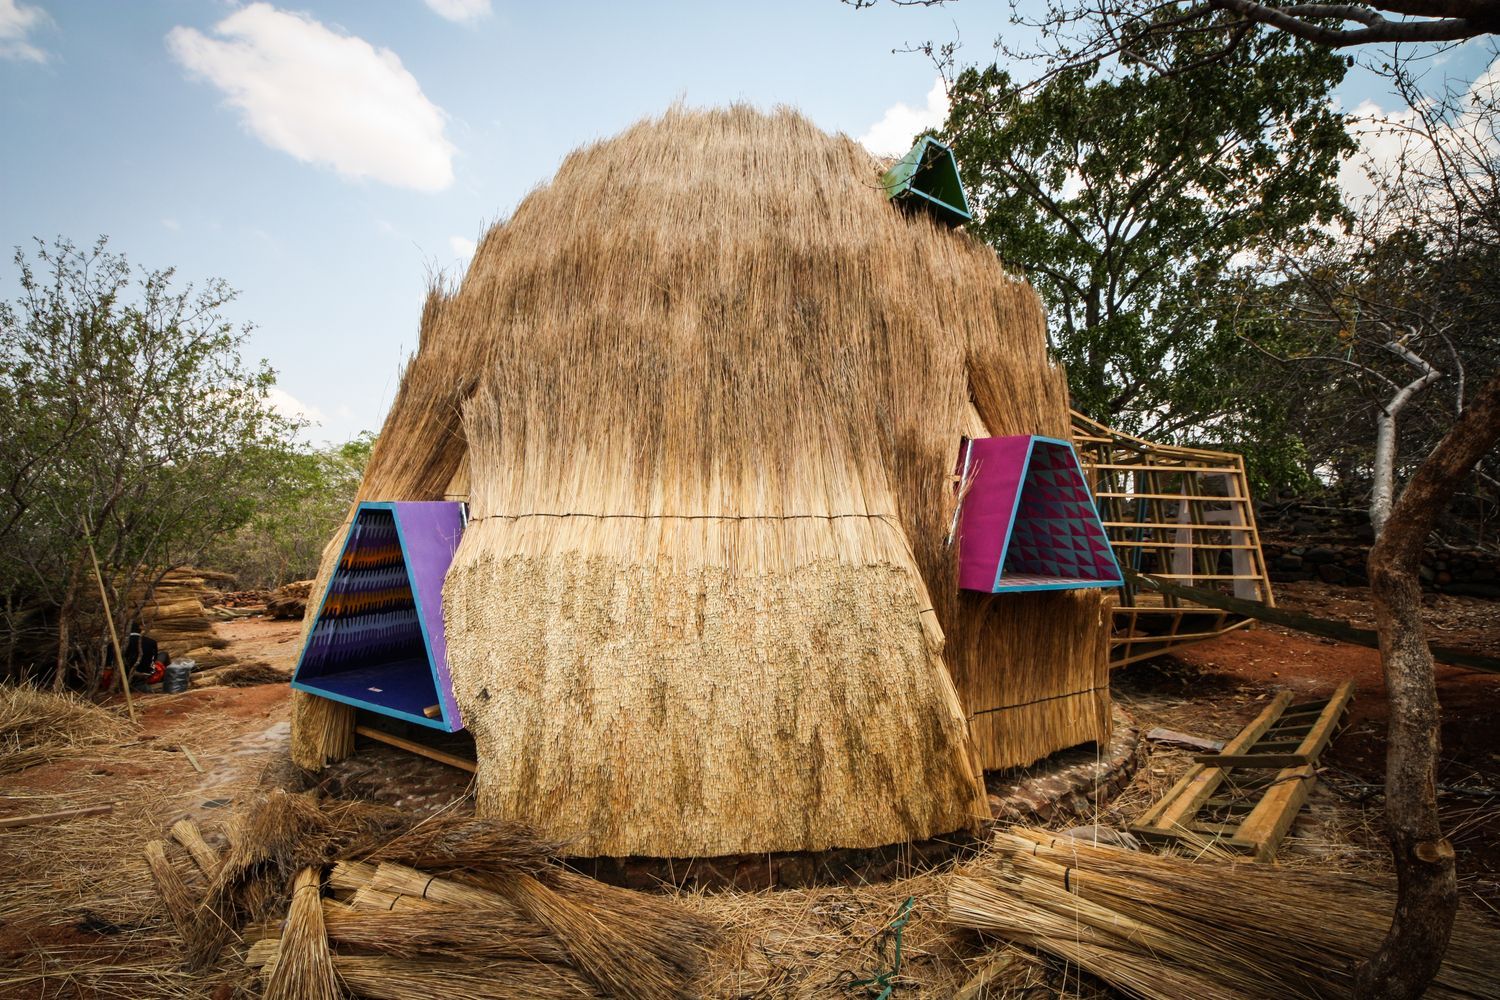 Дитячий садок у будинку з сіна: в Зімбабве побудували незвичну споруду – фото 